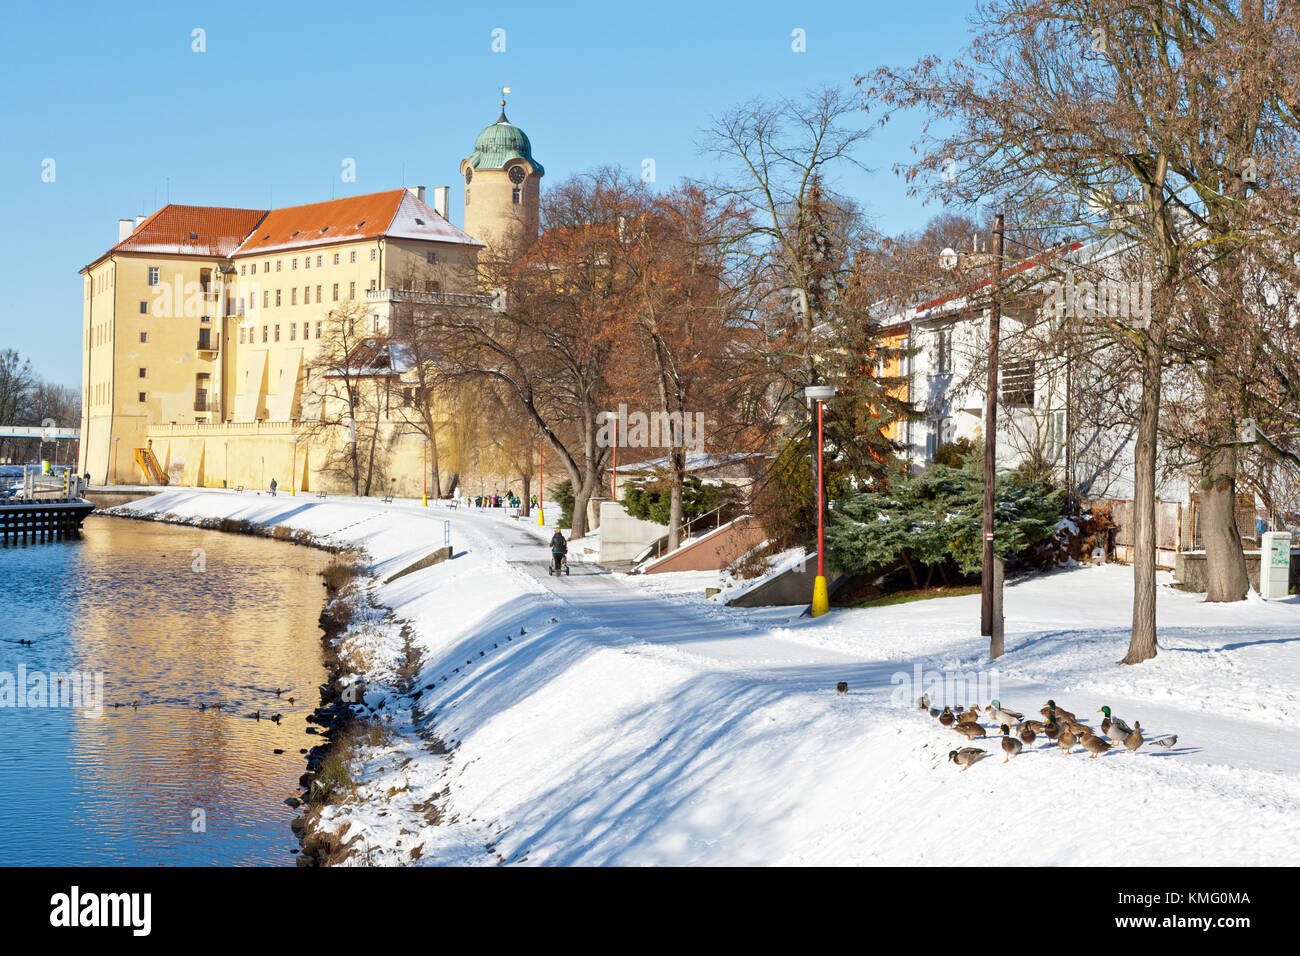 castillo de 13 céntimos, dique del río Elba, ciudad balneario Podebrady, Bohemia central, república Checa Foto de stock